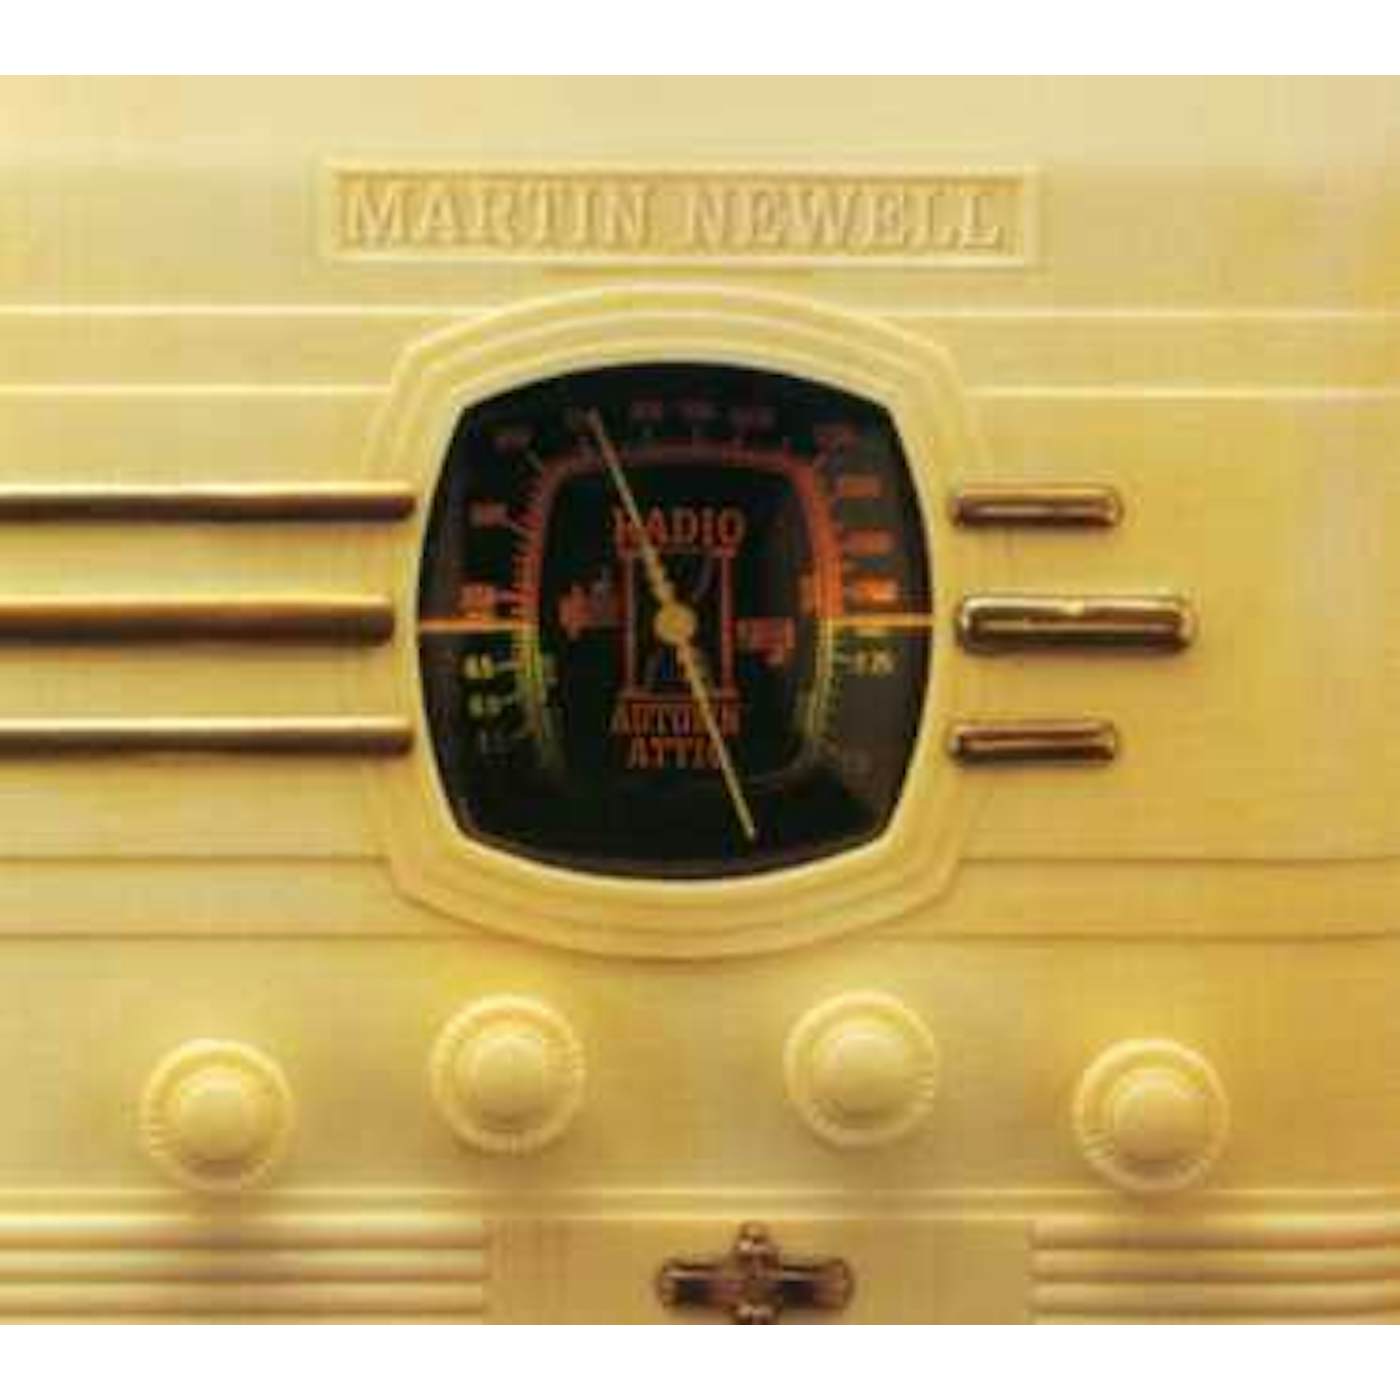 Martin Newell RADIO AUTUMN ATTIC CD